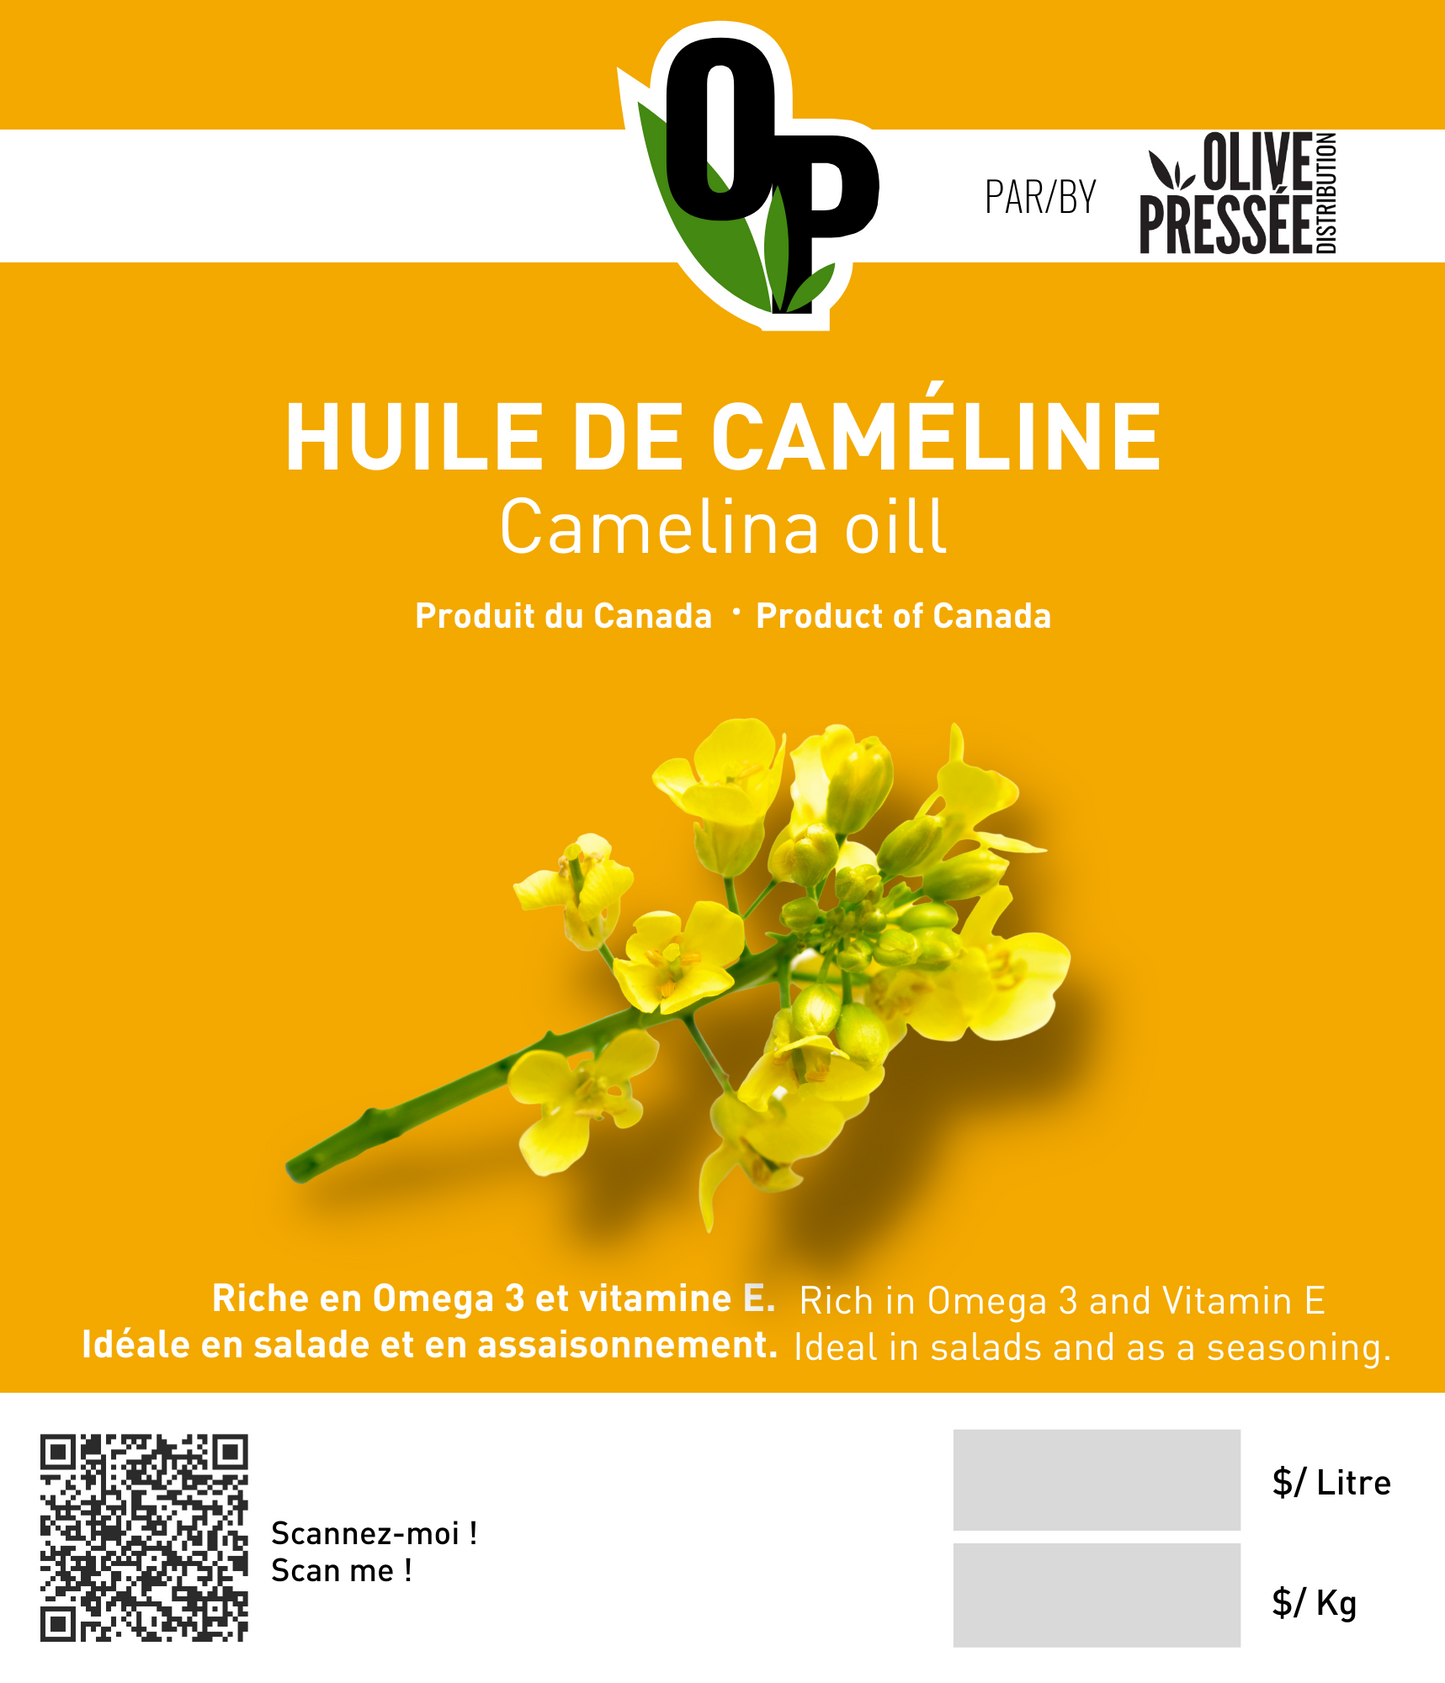 HUILE DE CAMÉLINE BIOLOGIQUE  / ORGANIC CAMELINA OIL